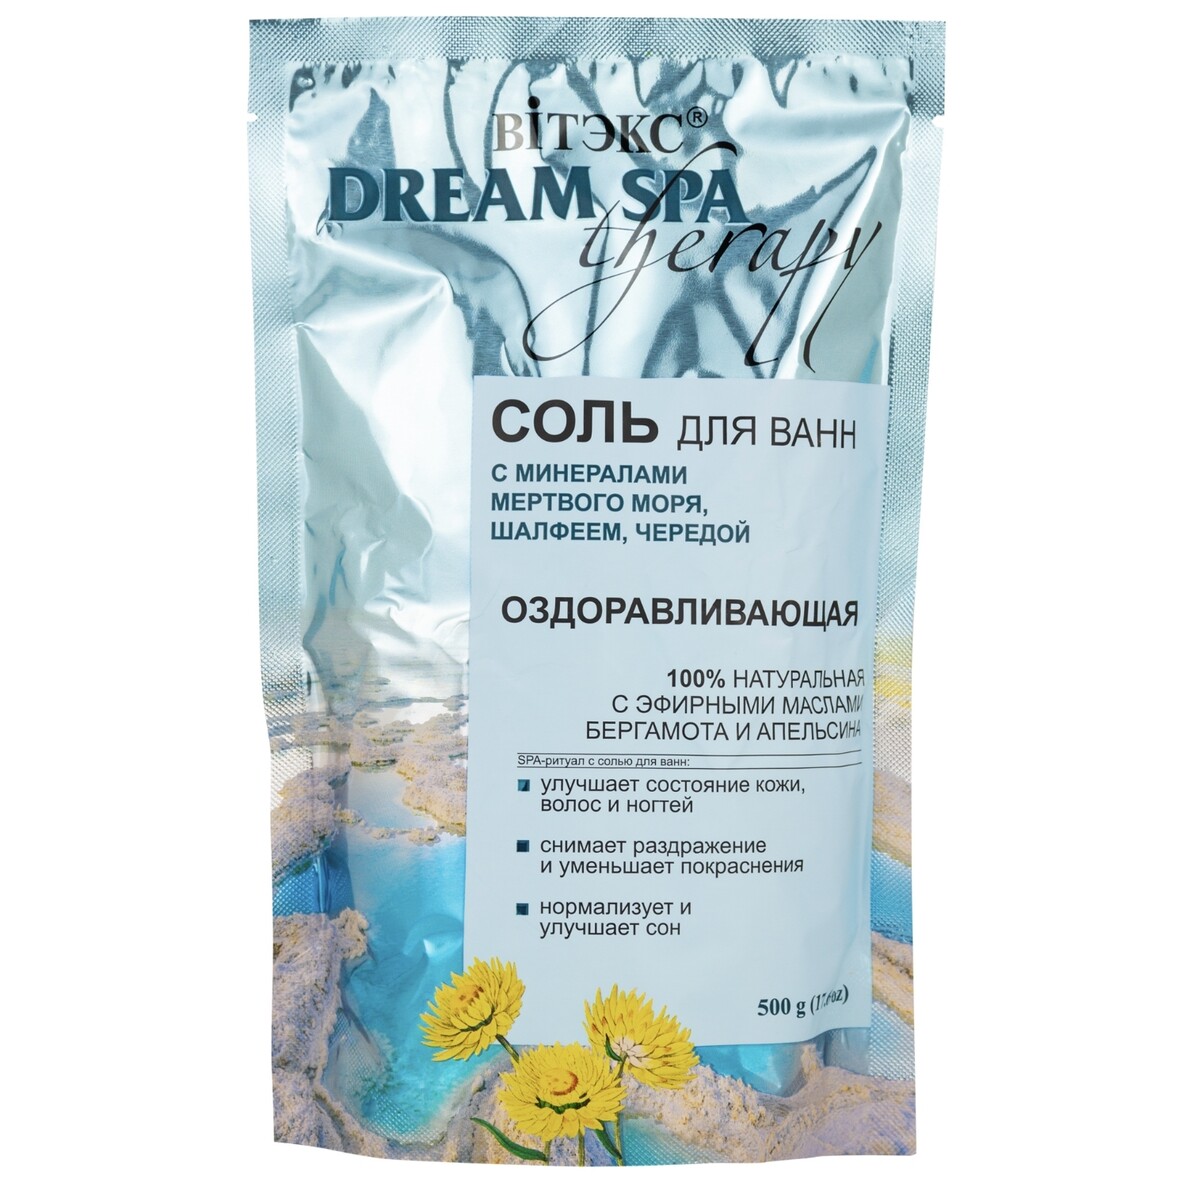 Dream spa therapy соль для ванн оздоравливающая с солью мертв.моря, шалф-м,черед.и аромамасл.,500 г самолечение бессонницы